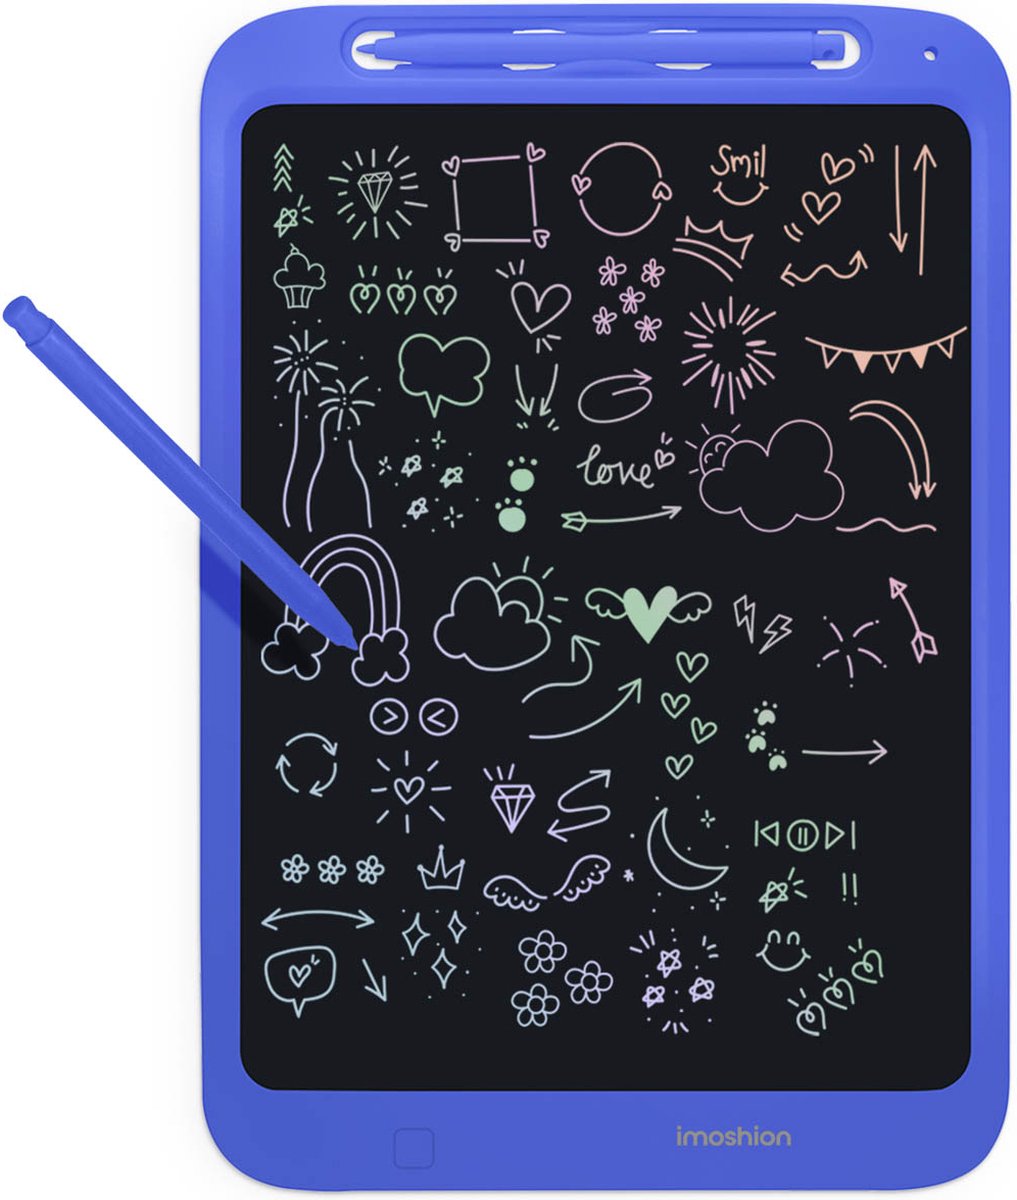 iMoshion LCD Tekentablet voor Kinderen - 11.8 inch - Tekenbord met Kleurenscherm en 2 pennen - Grafische Teken Tablet met Opberghoes - Cobalt Blue